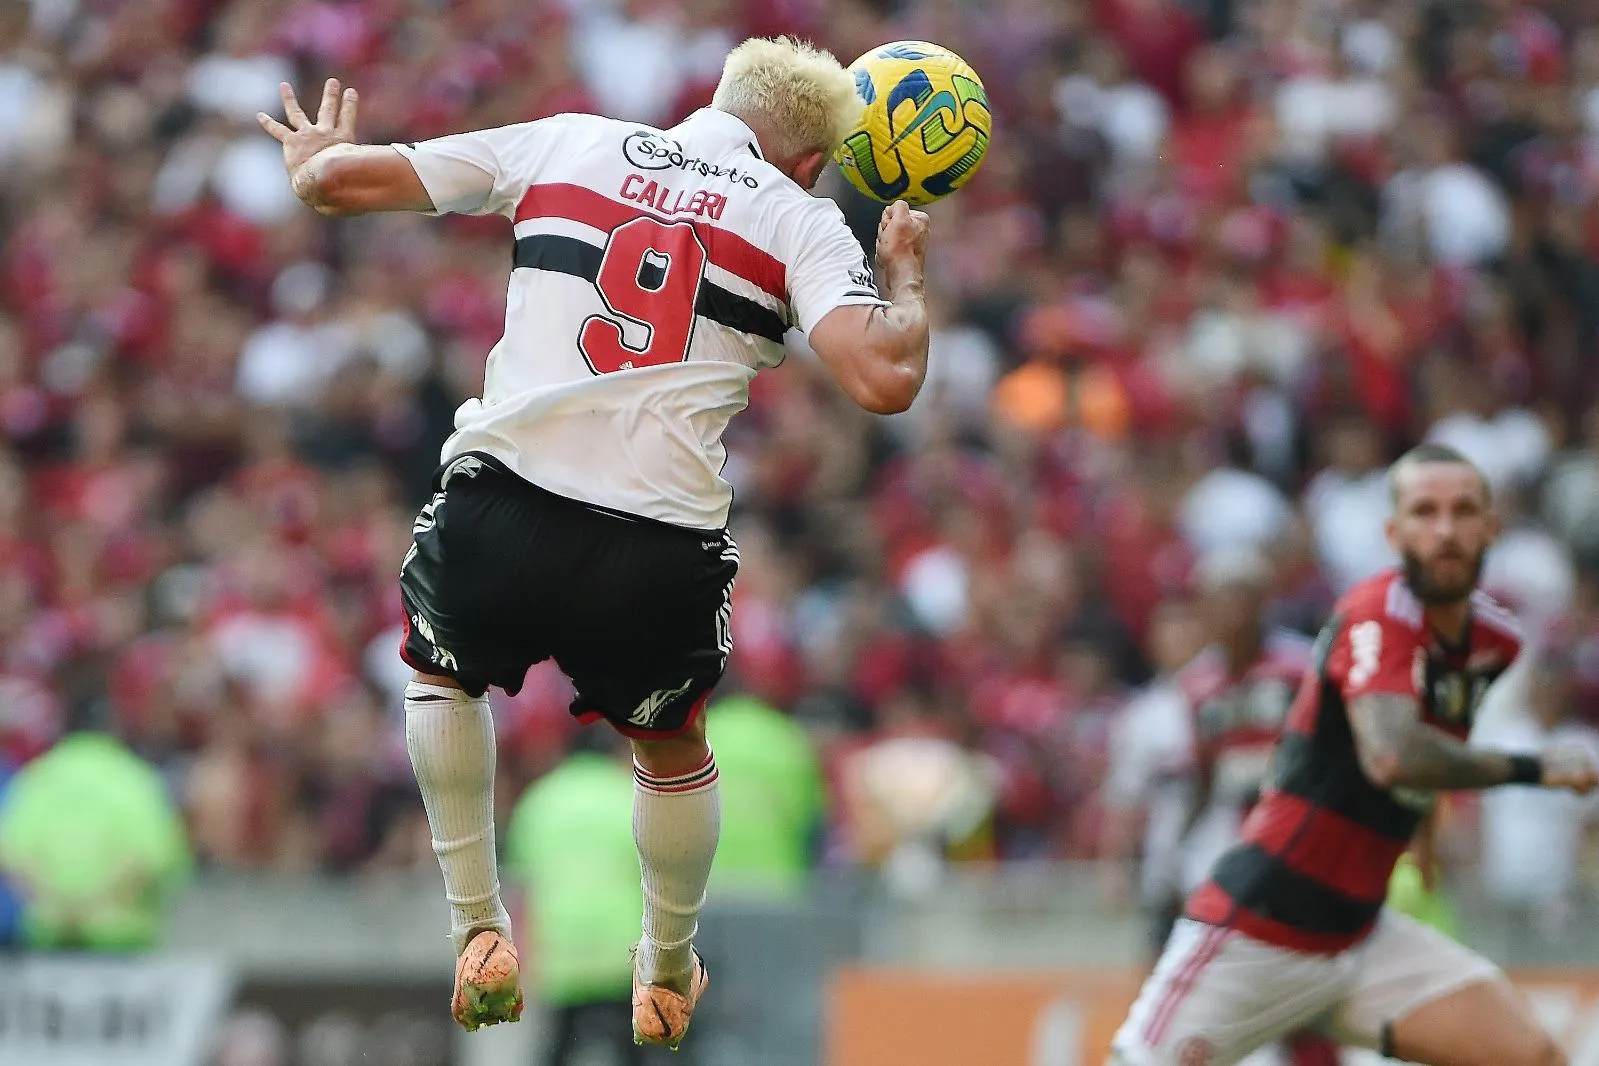 Acordo de R$ 1 milhão para liberar Wesley trava a um mês de fim de contrato  com o Flamengo, flamengo